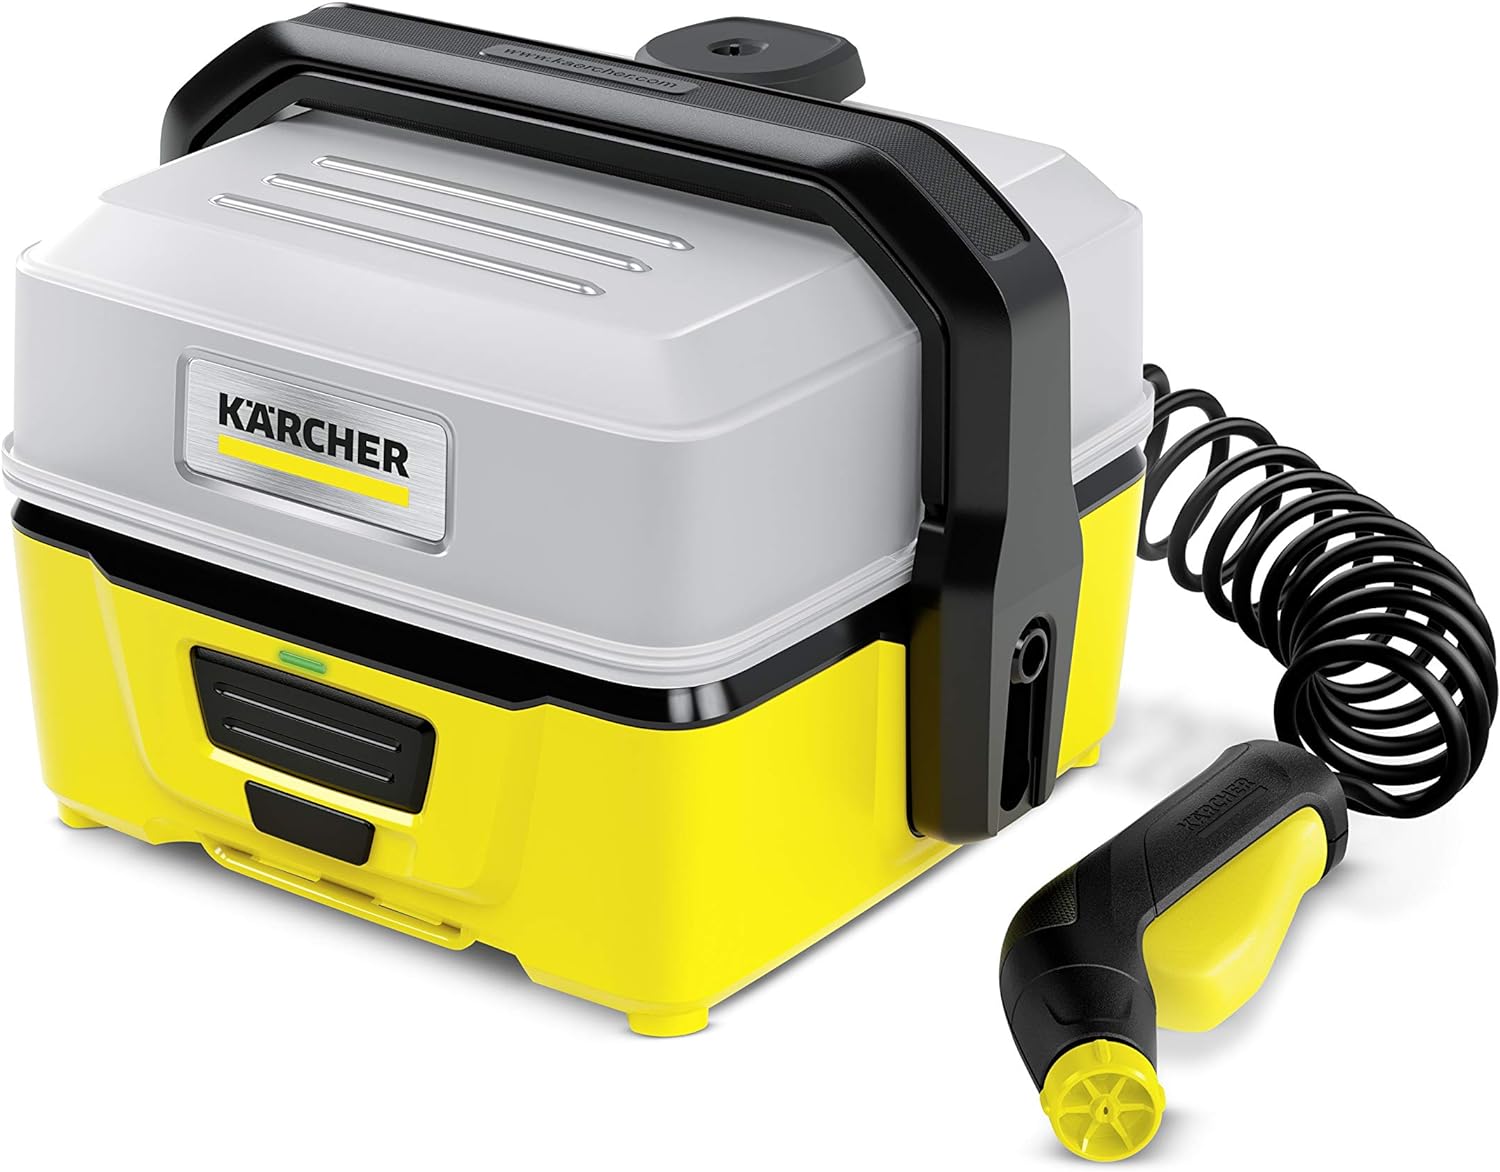 【在庫限り！アウトレット】ケルヒャー(Karcher) モバイルマルチクリーナー OC3 1.680-020.0 バッテリー内蔵 給水タンク一体型 ※店頭在庫品の為パッケージにスレ・汚れがある場合が御座います